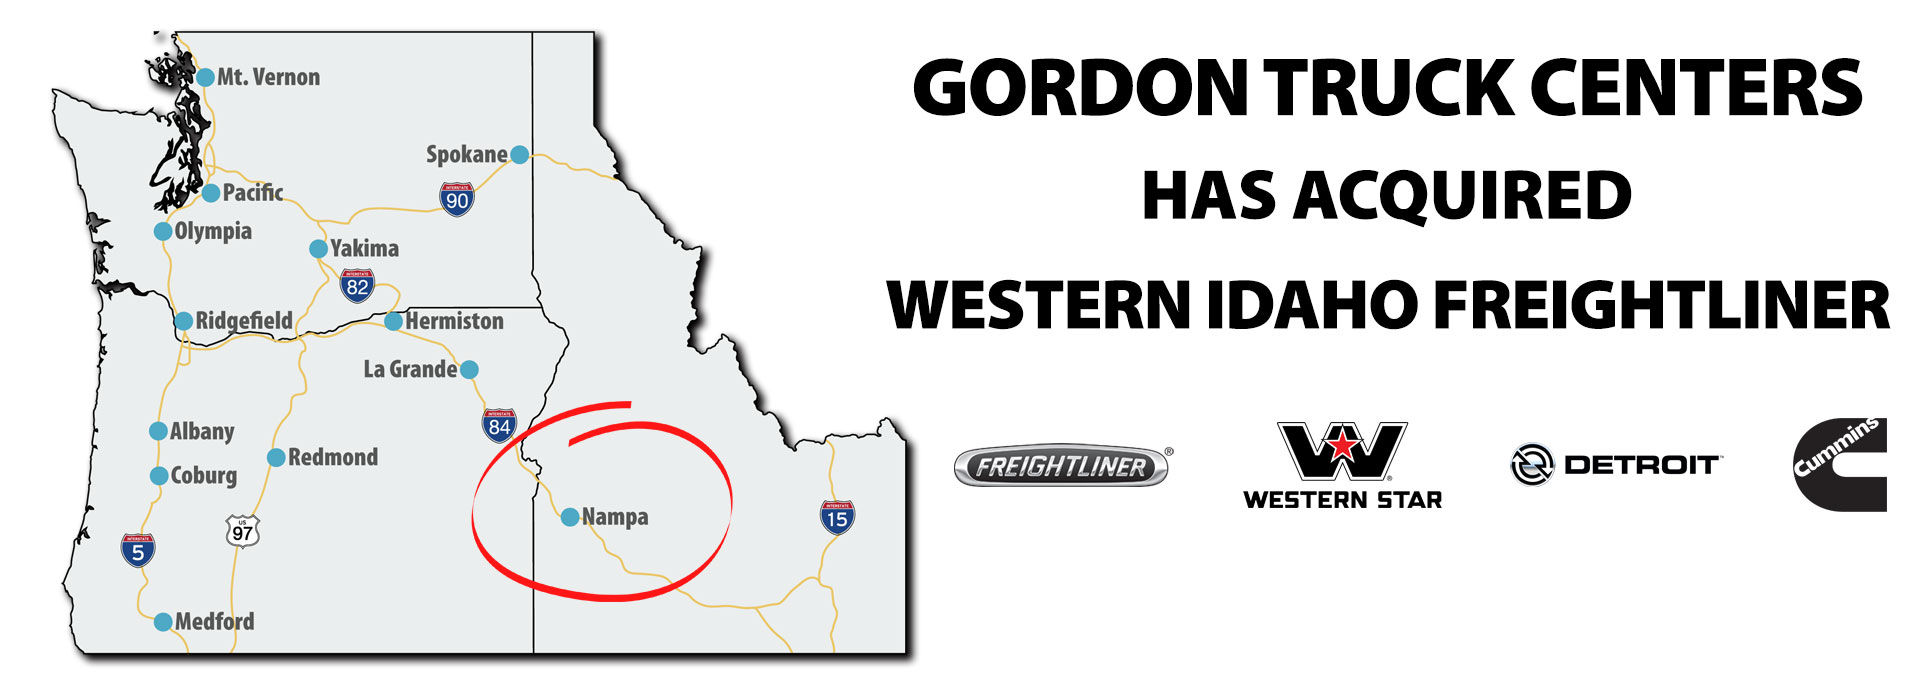 Gordon Truck Centers Acquires Western Idaho Freightliner